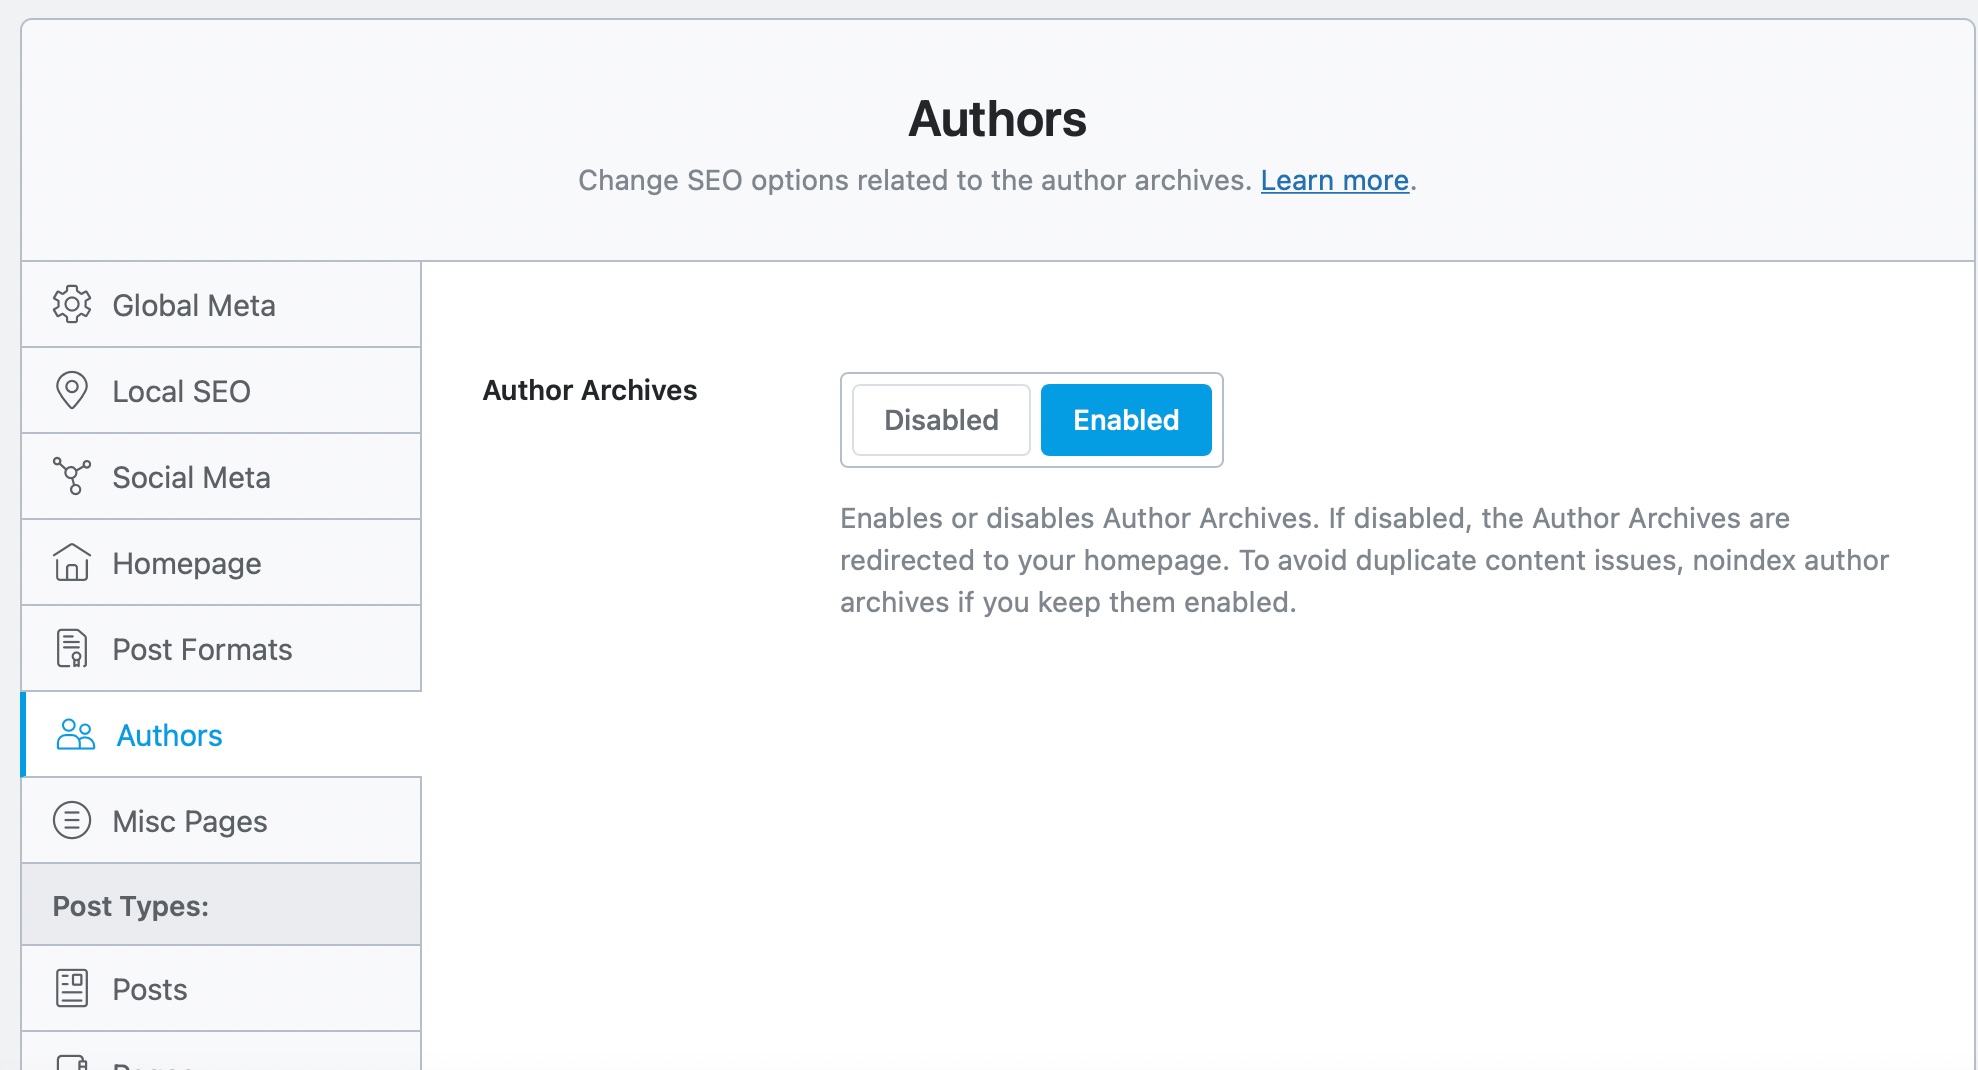 Authors SEO Titles & Meta settings